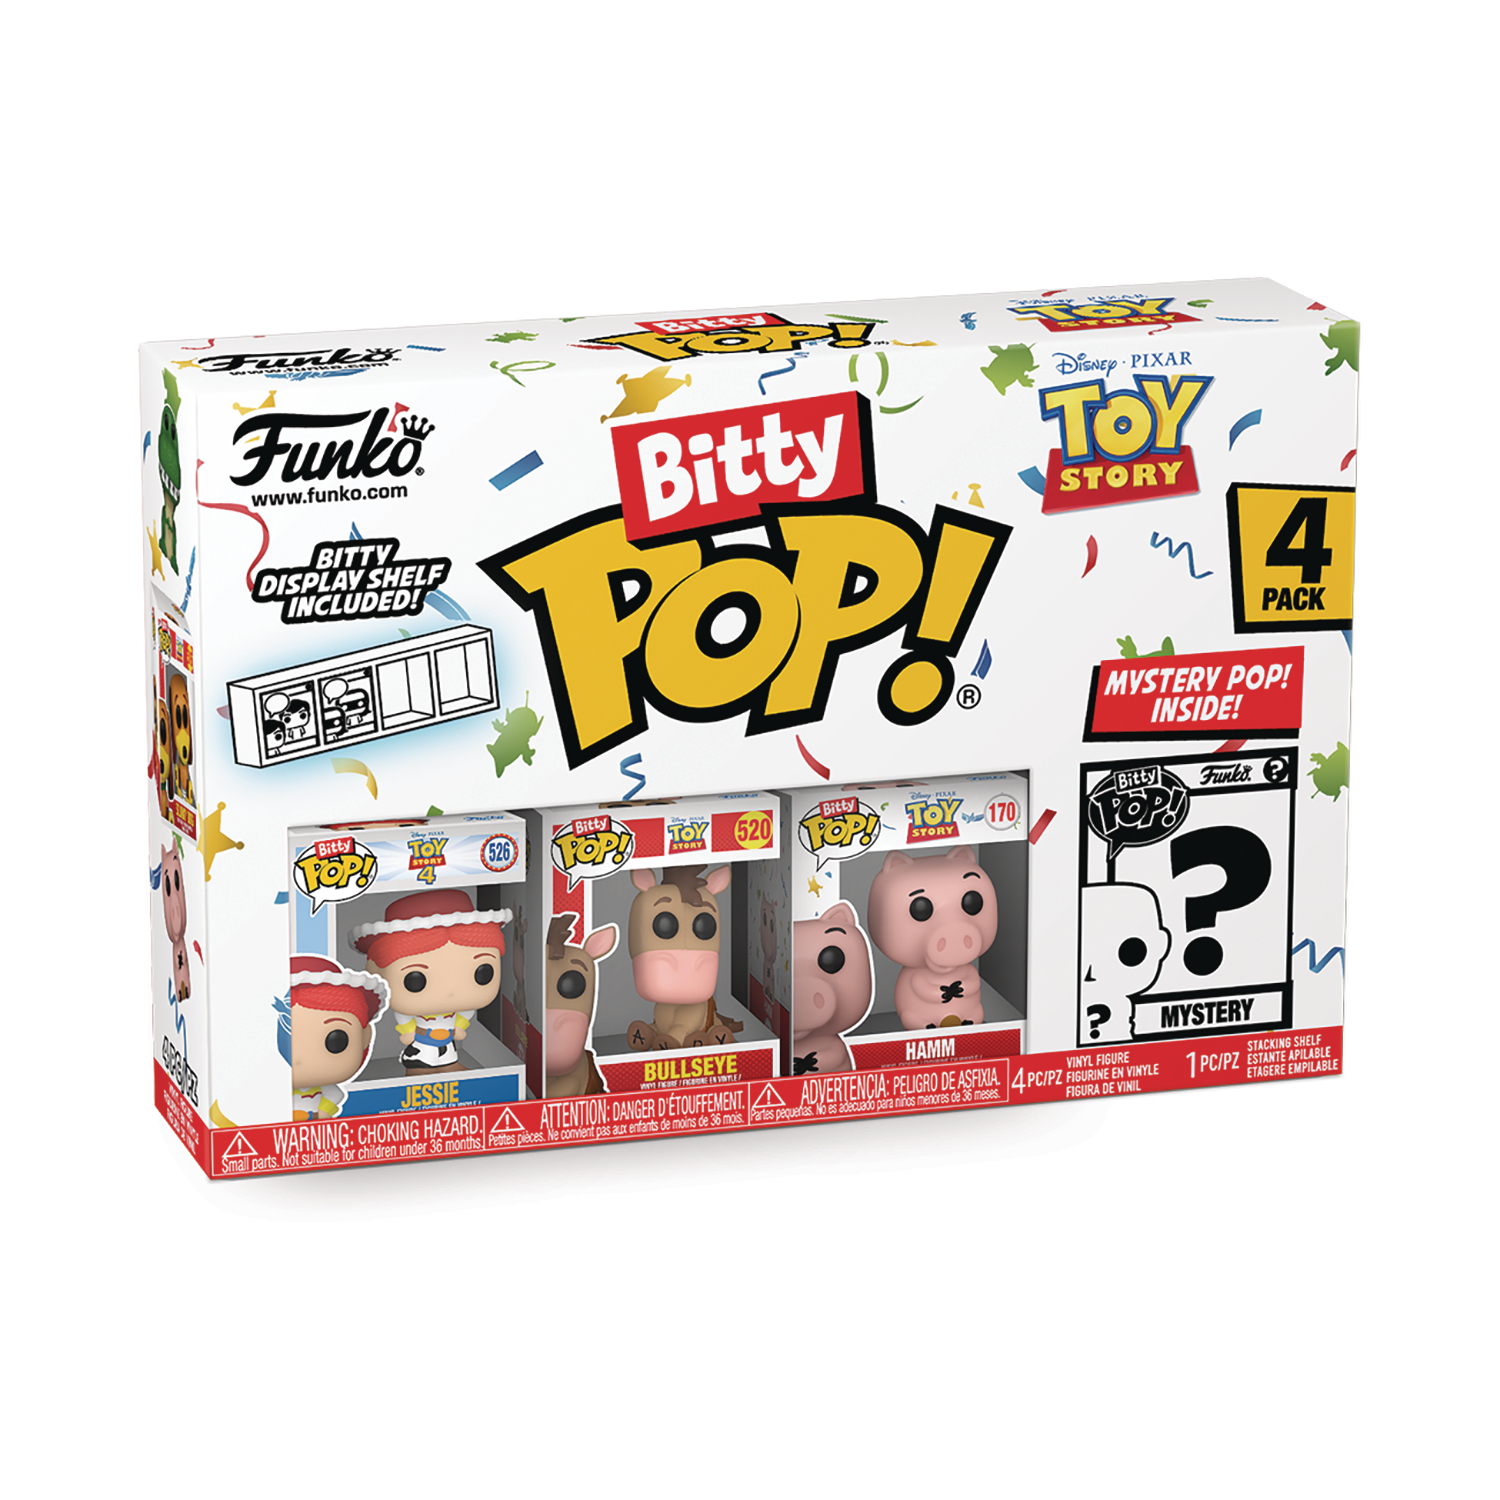 Bitty Pop Toy Story Jessie 4-Pack Figure